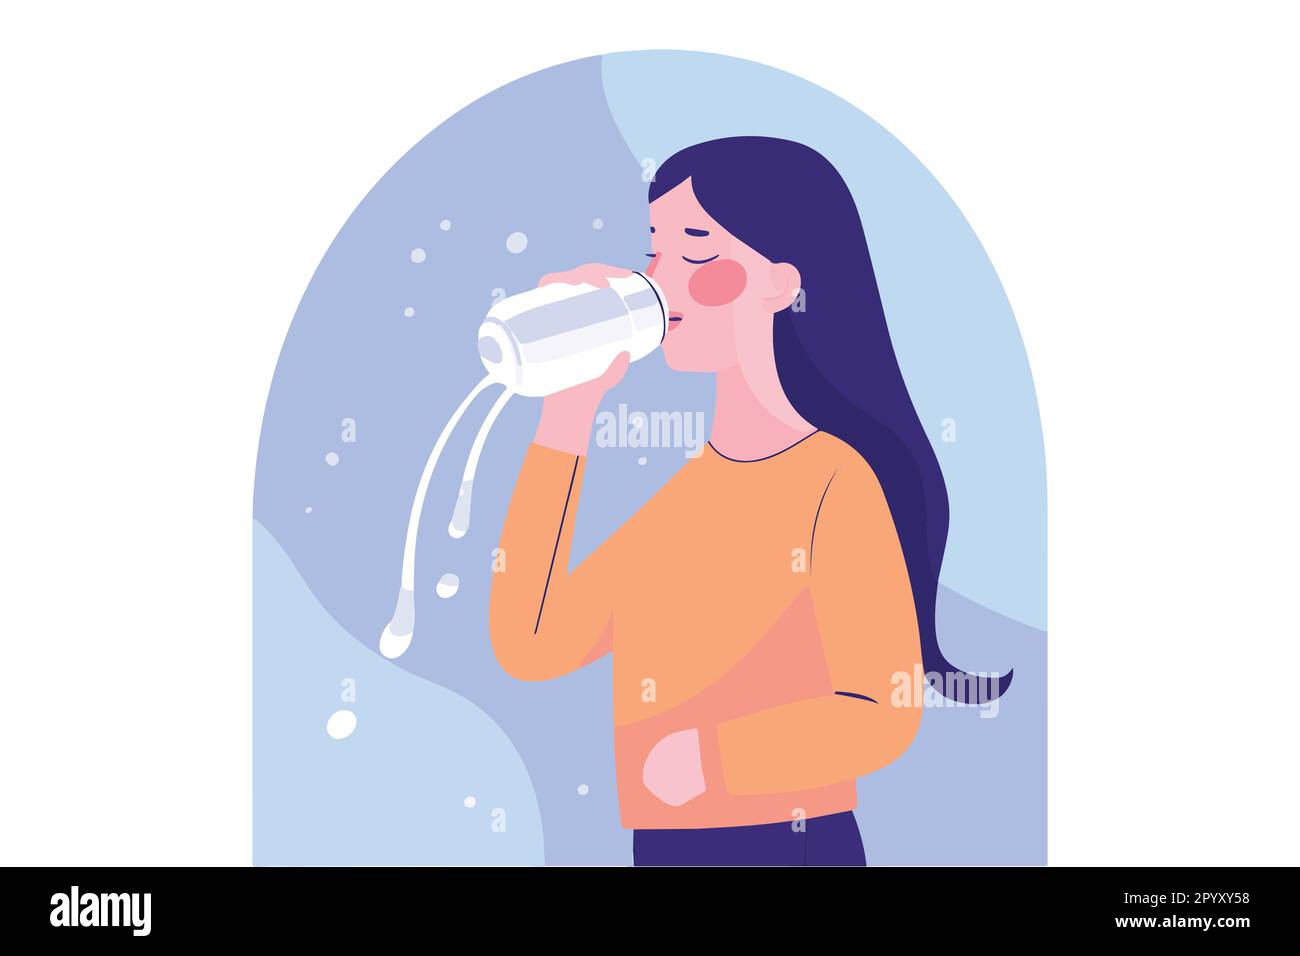 Ein Mädchen, das Milch aus einer Flasche trinkt, und ein Mädchen, das Wasser trinkt, eine flache Vektordarstellung Stock Vektor